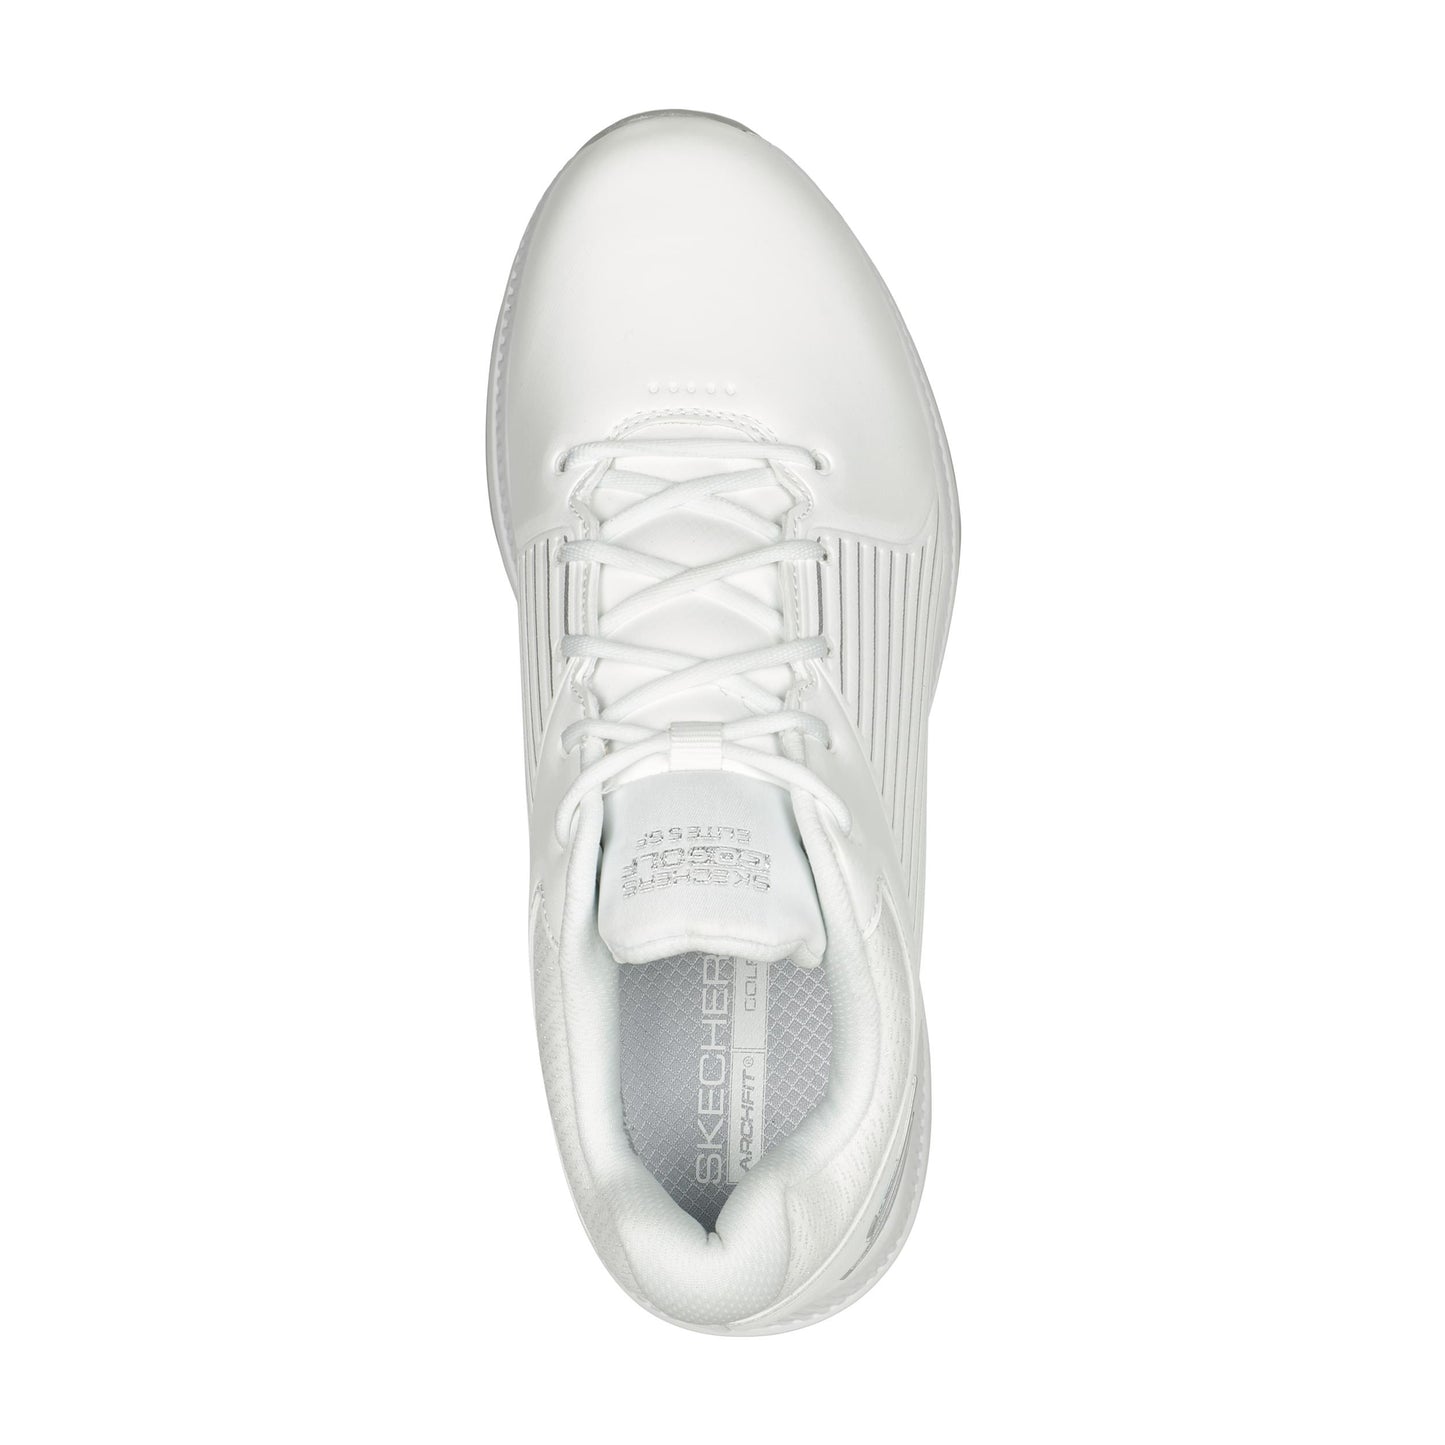 Skechers Ladies GO GOLF Elite 5 GF Waterproof Shoe in White